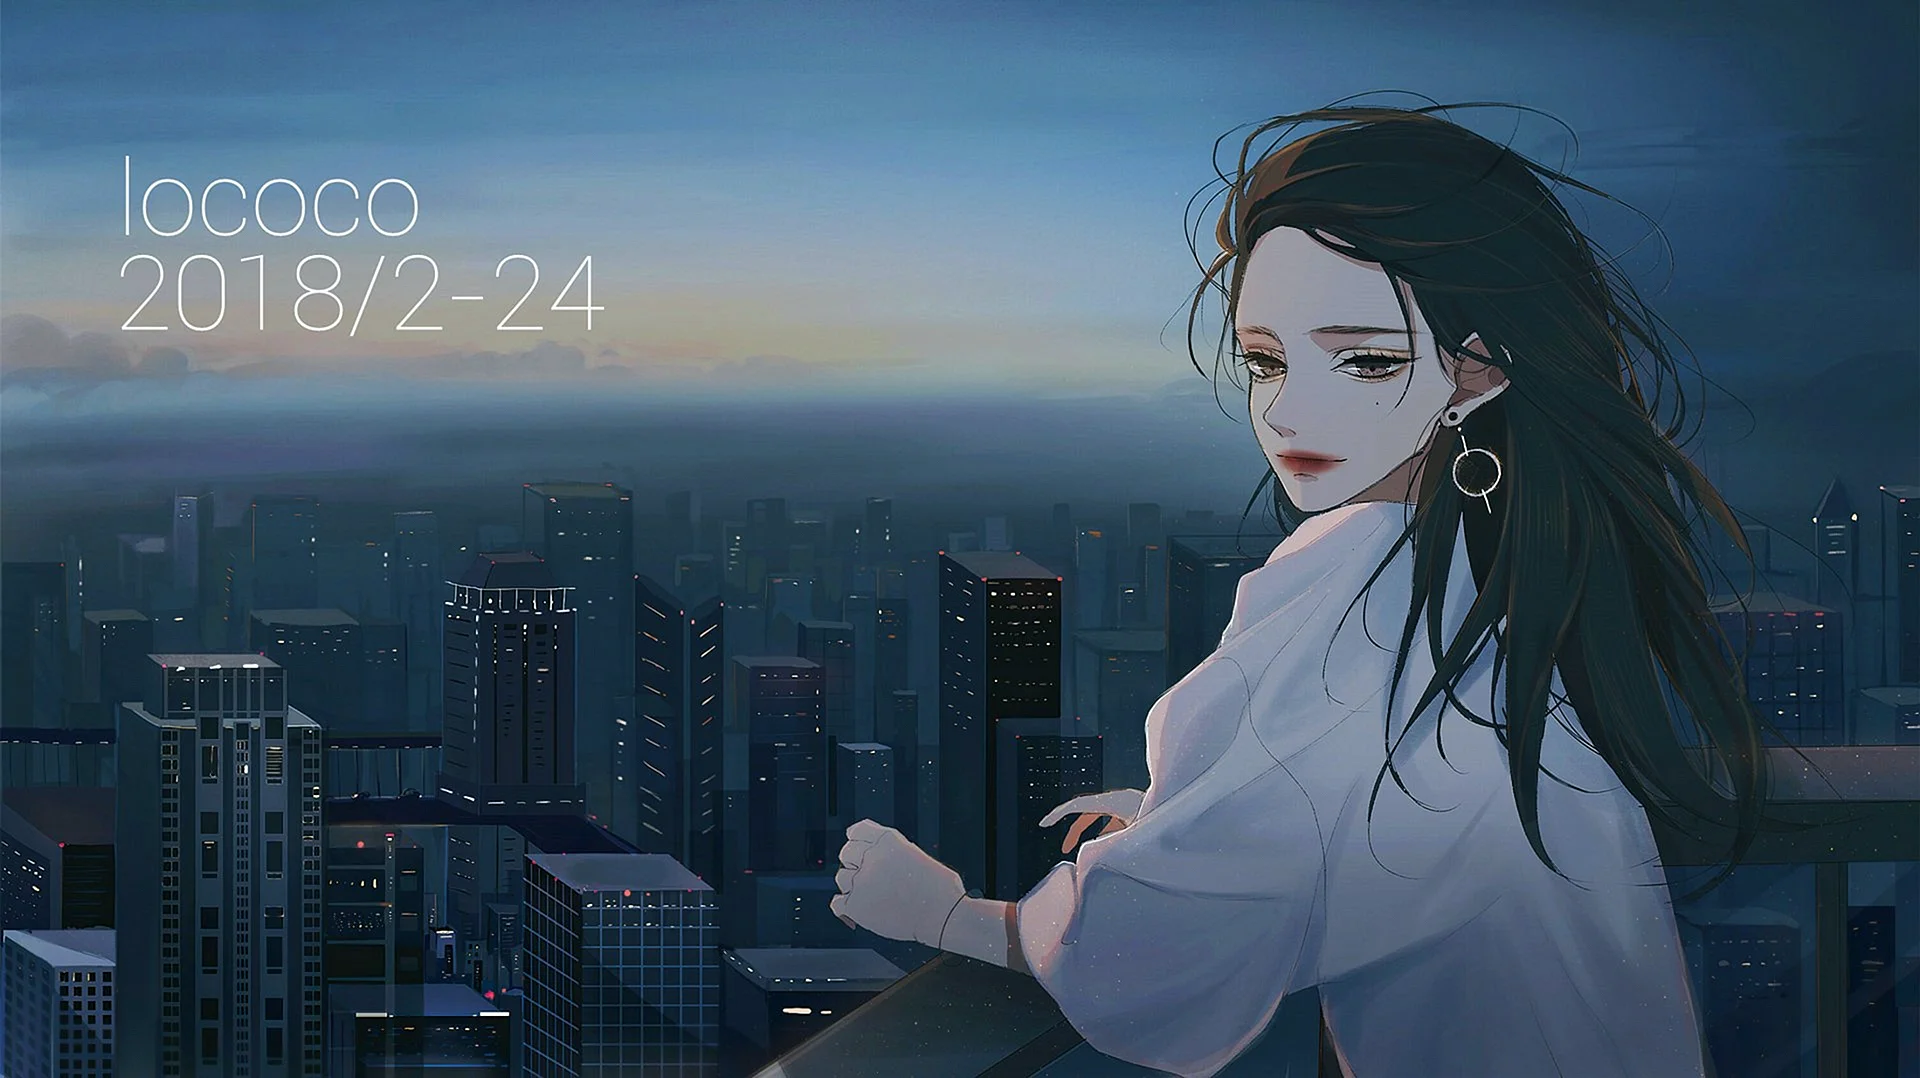 Anime girl aesthetic Wallpaper